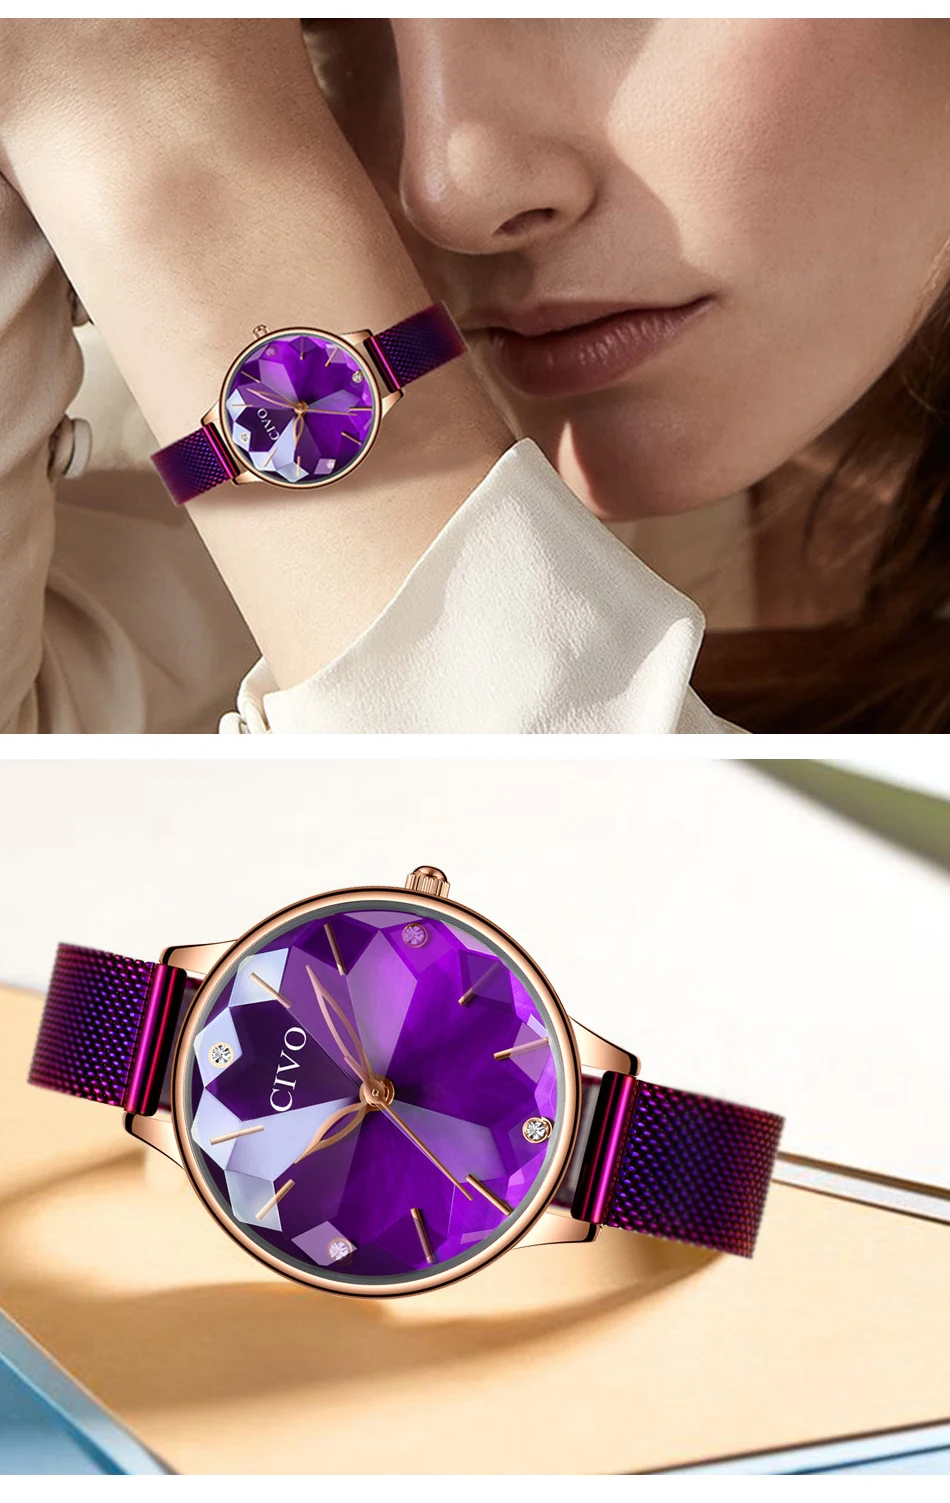 CIVO модные женские часы Топ бренд класса люкс алмаз женская одежда часы для женщин фиолетовый стальной сетчатый ремешок наручные часы